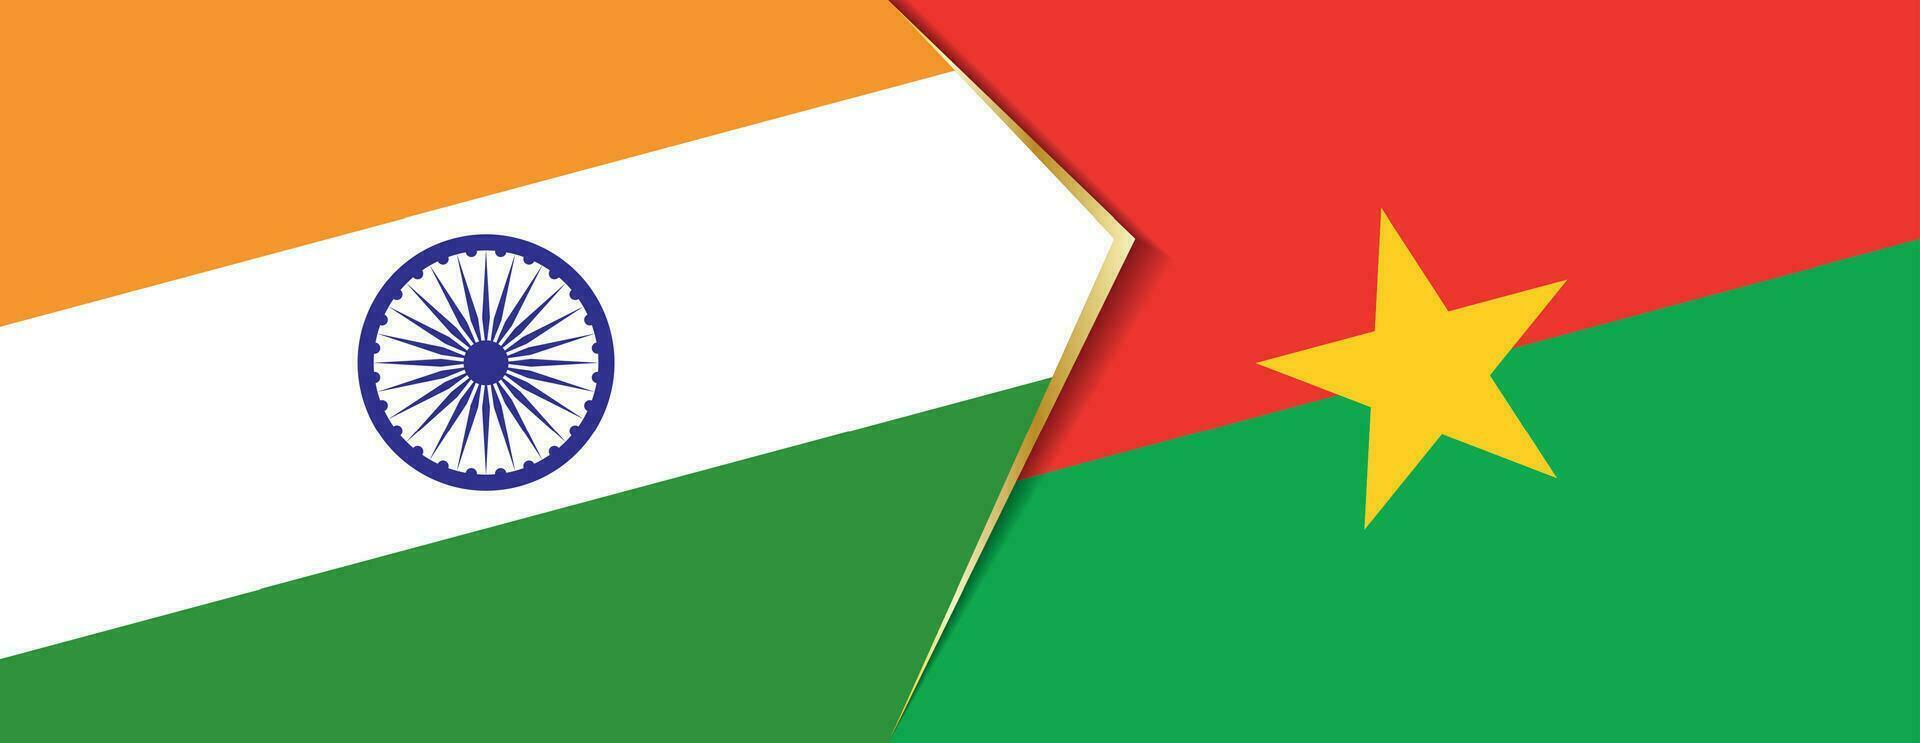 Indien und Burkina Faso Flaggen, zwei Vektor Flaggen.